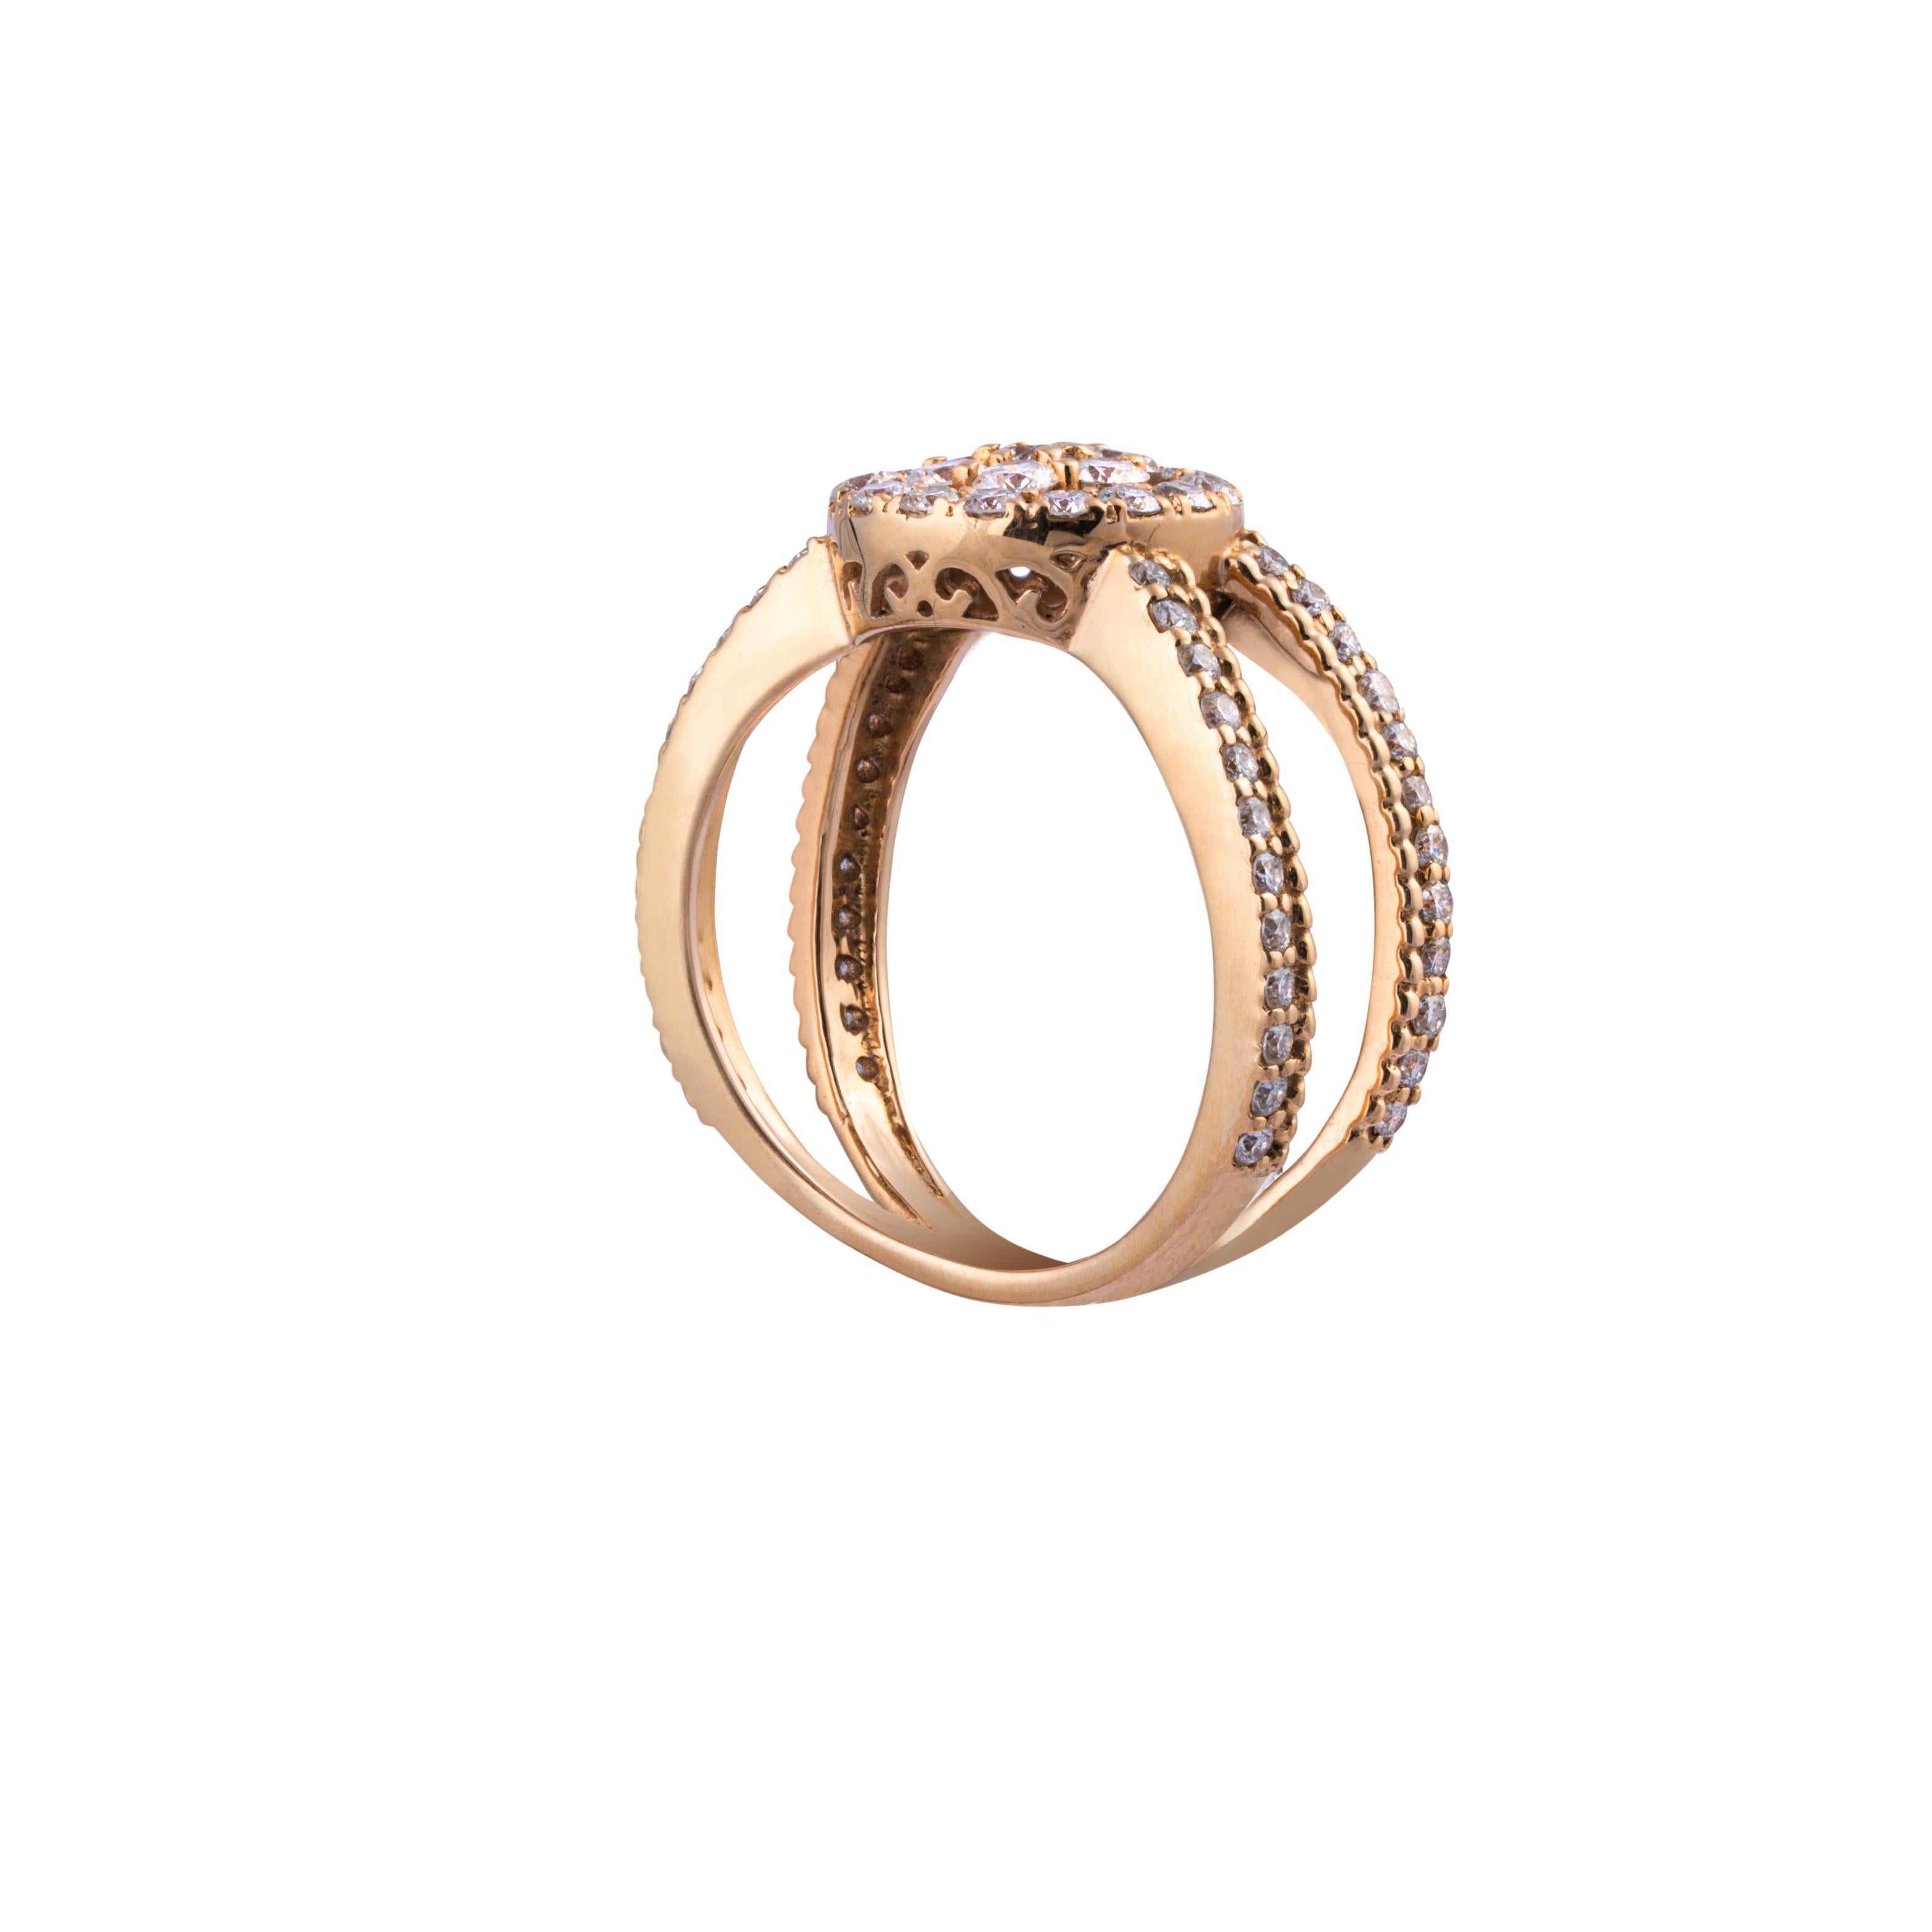 Women's 18k gold Diamond Ring